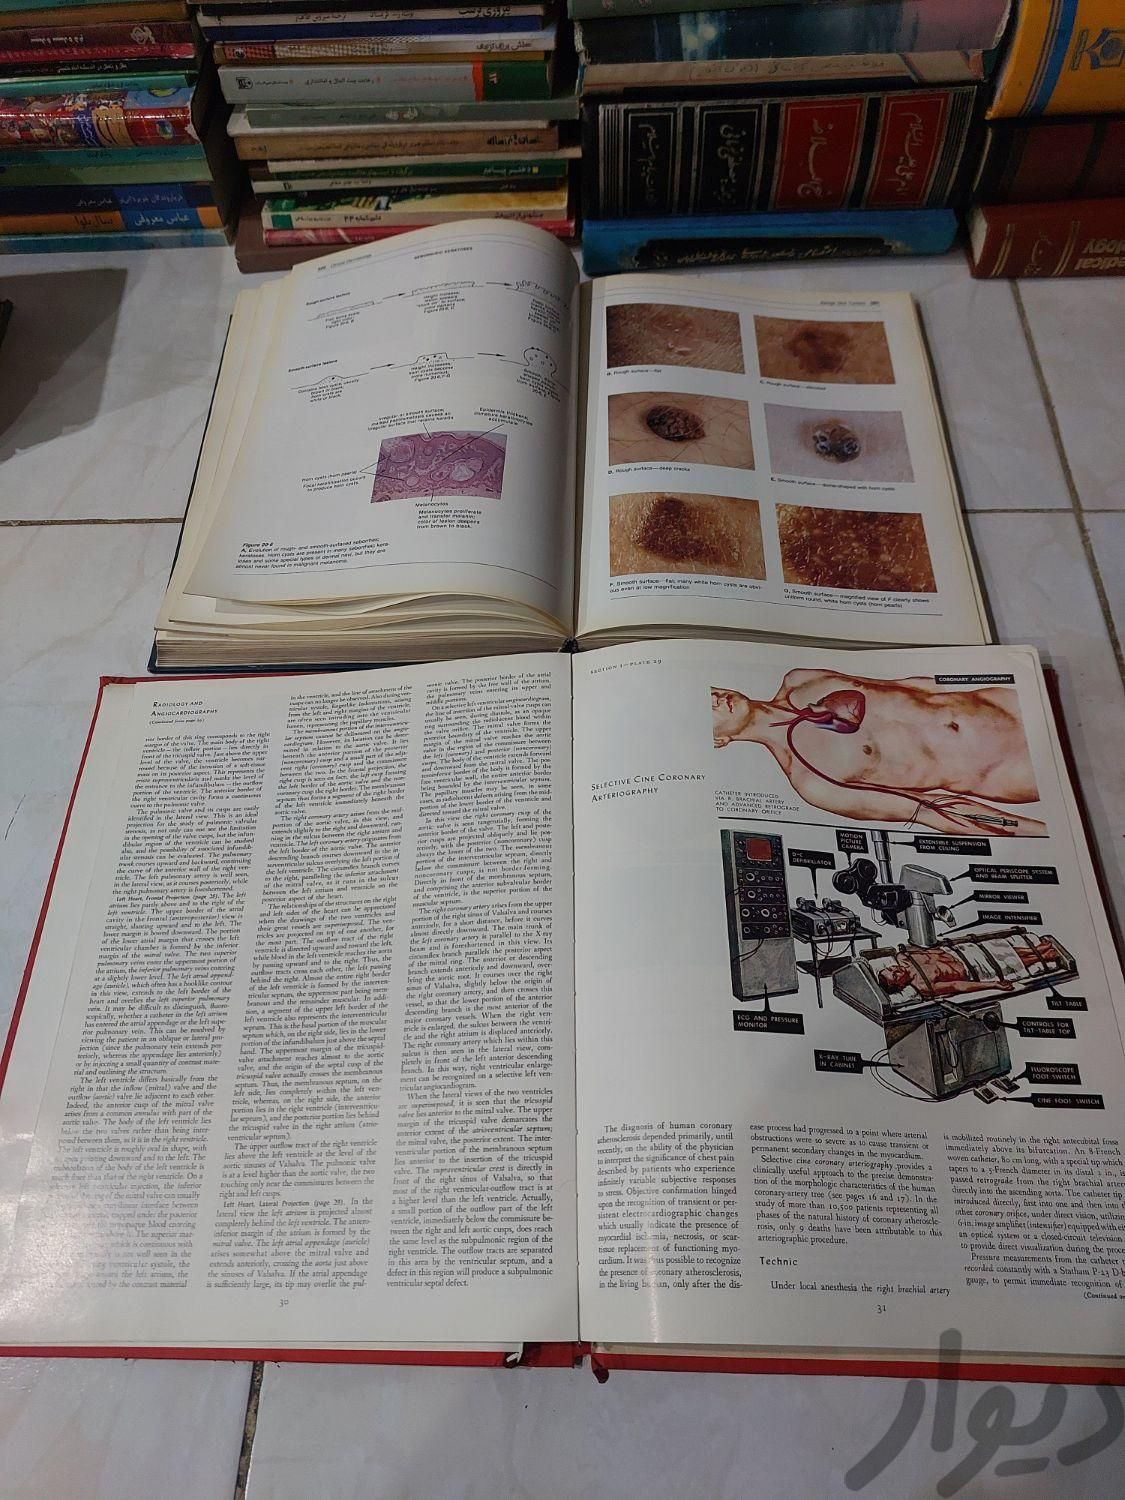 کتاب های قدیمی ادبی و کتاب های پزشکی داروشن ژنتیک|حراج|تهران, جردن|دیوار